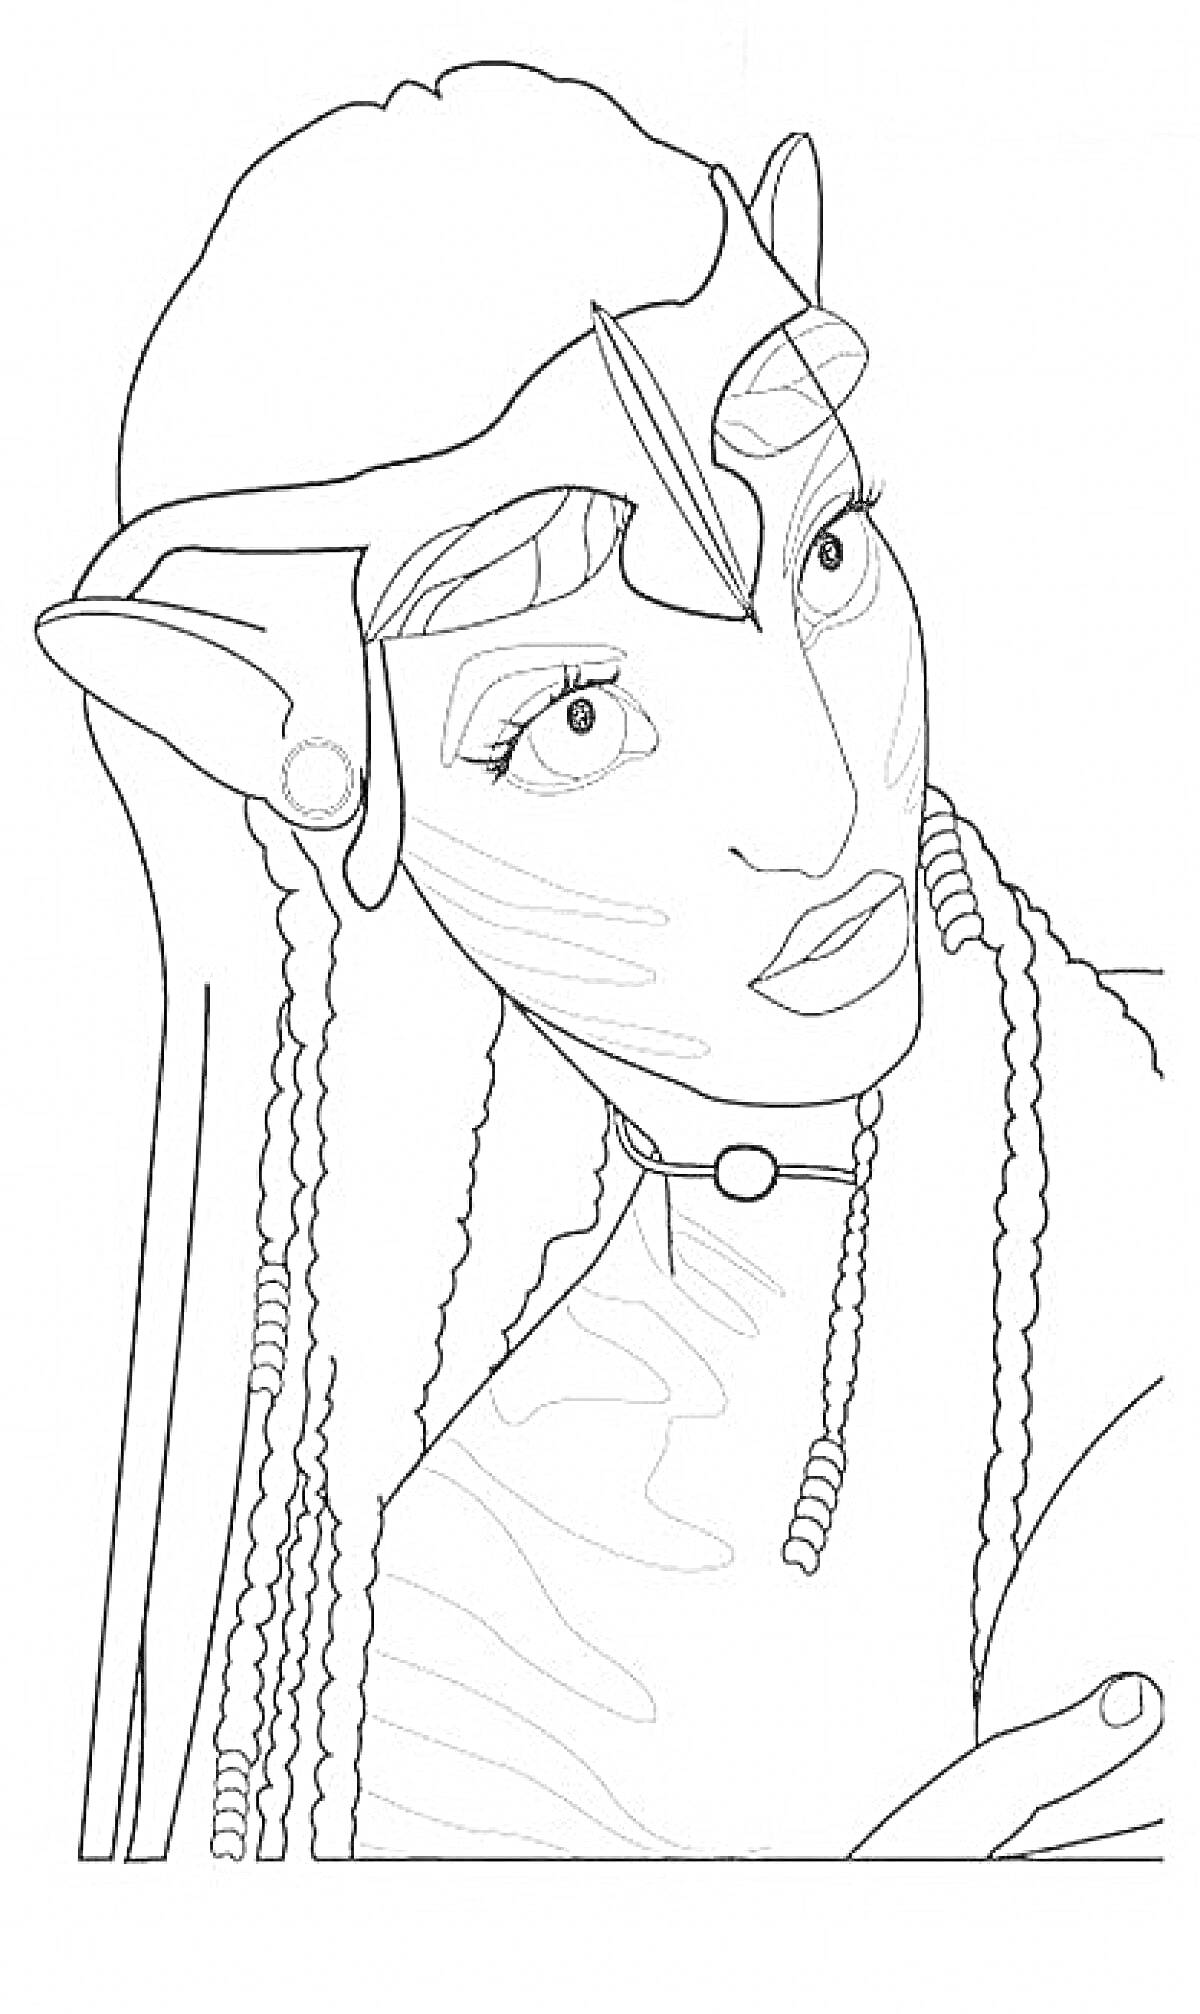 Аватар персонаж с вытянутыми ушами, длинными волосами и украшением на голове